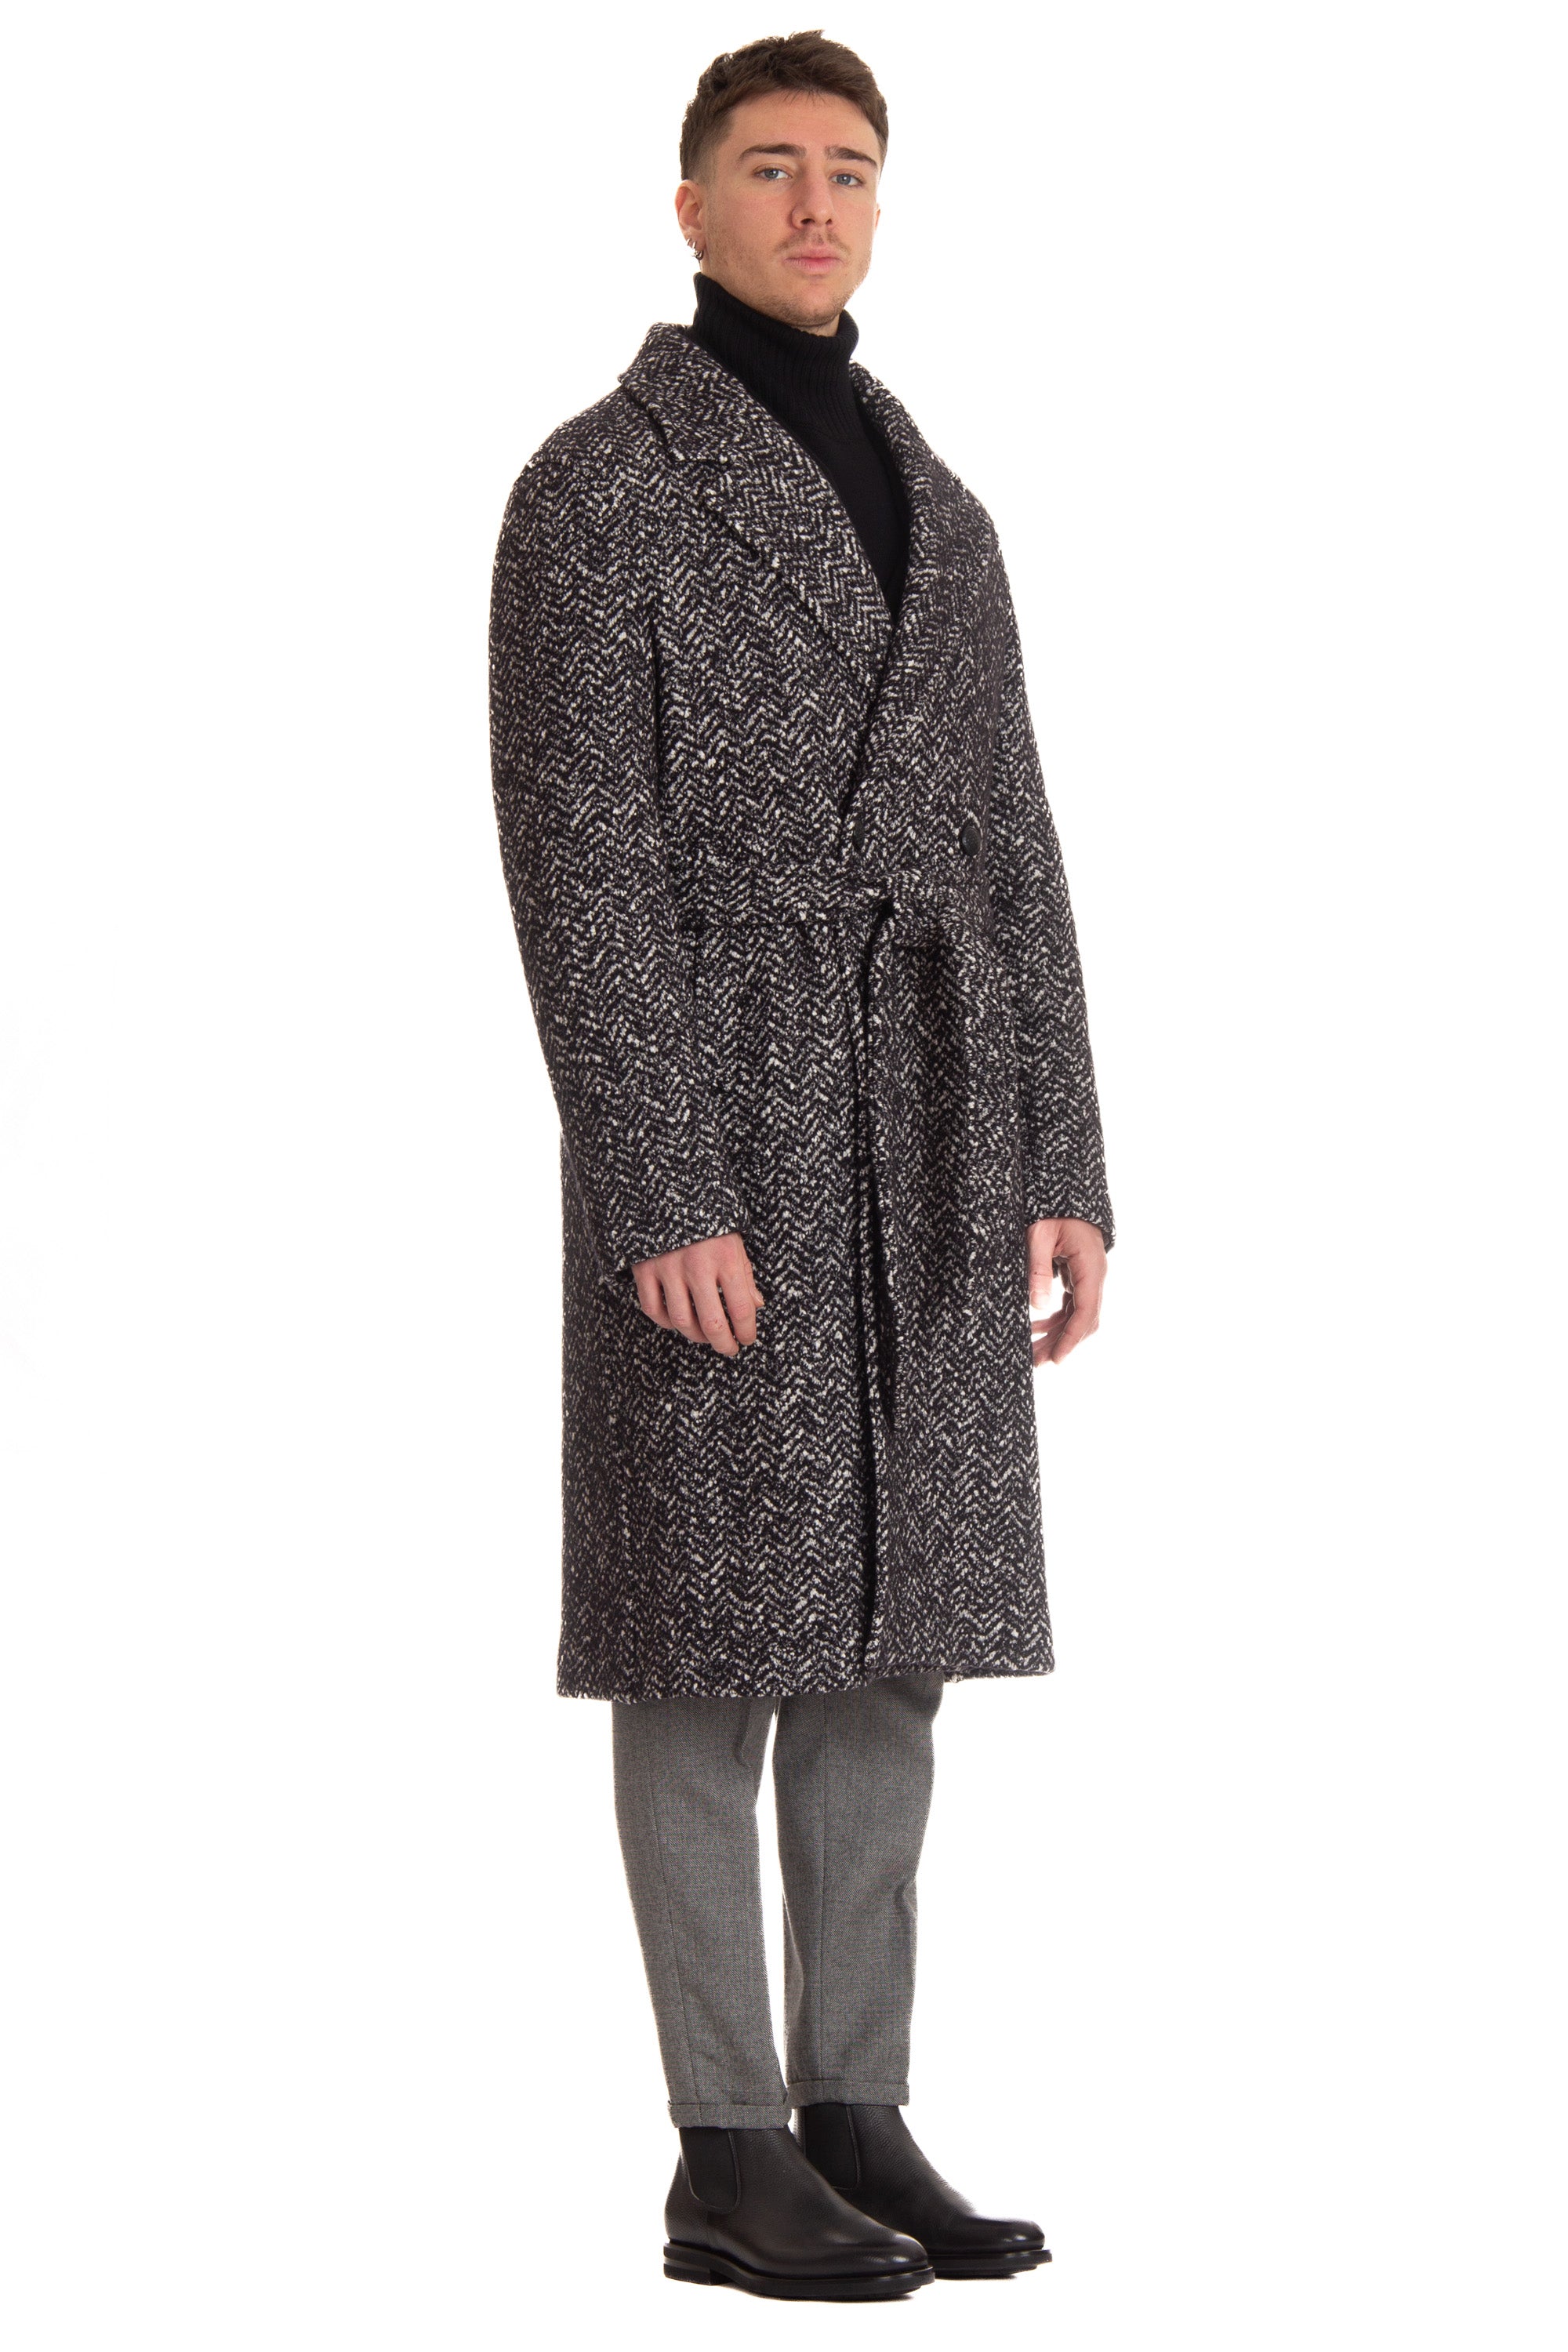 Cappotto doppiopetto in lana-cotone mod. Royce